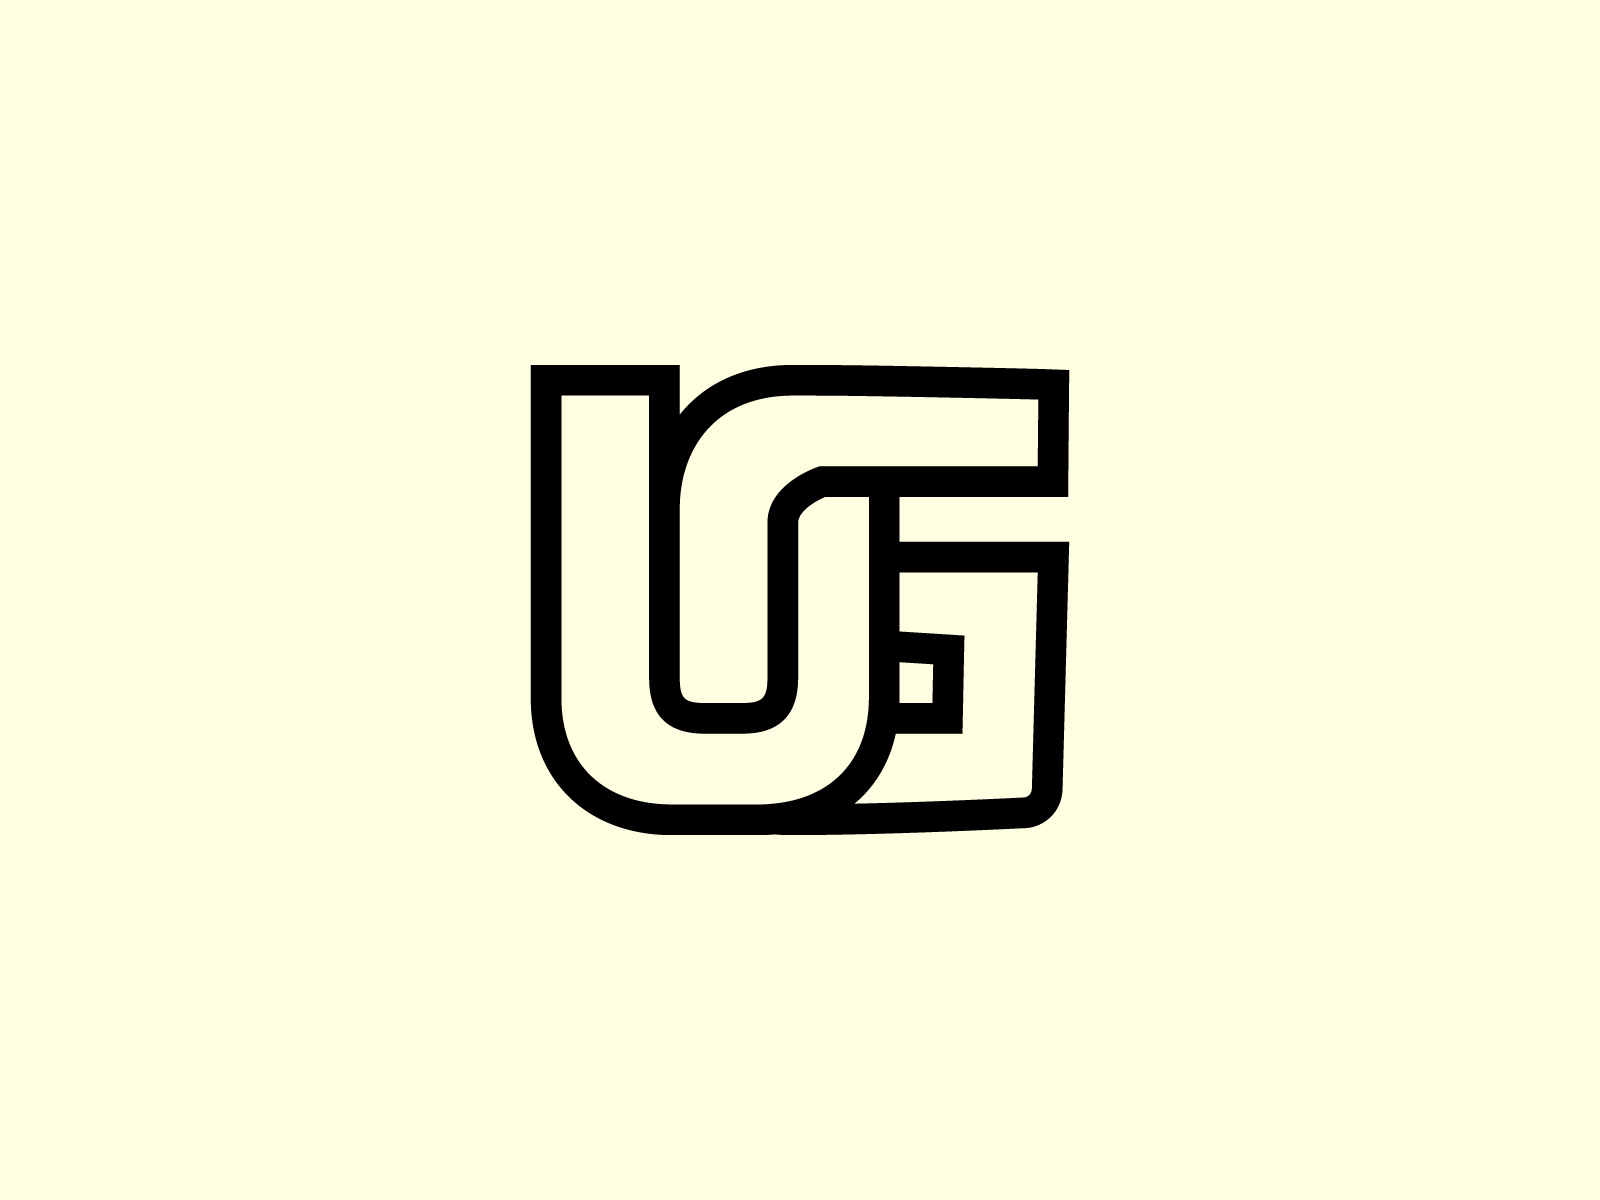 ug-logo-by-sabuj-ali-on-dribbble